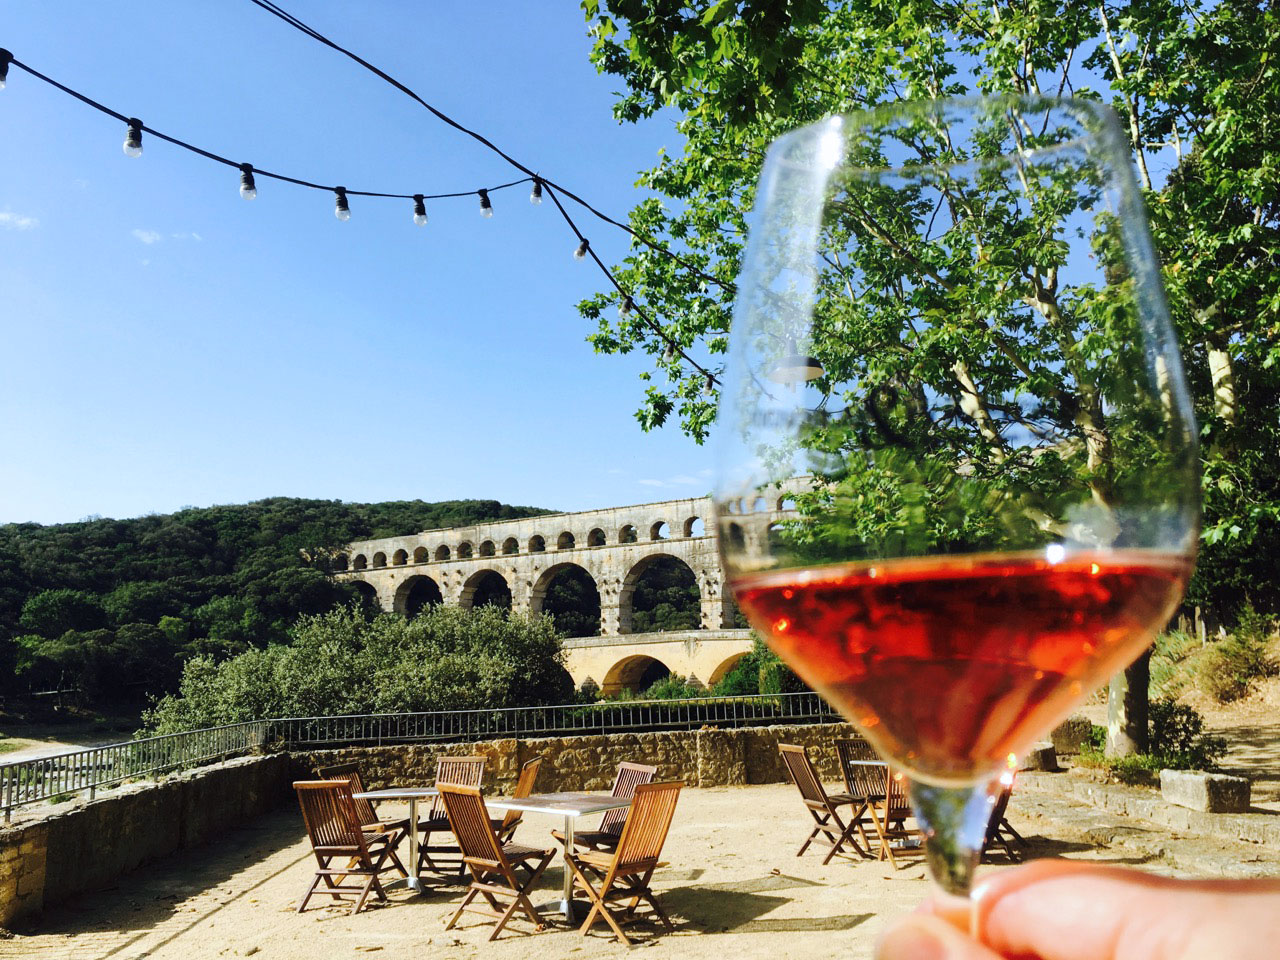 Tasting Tavel at the Pont du Gard